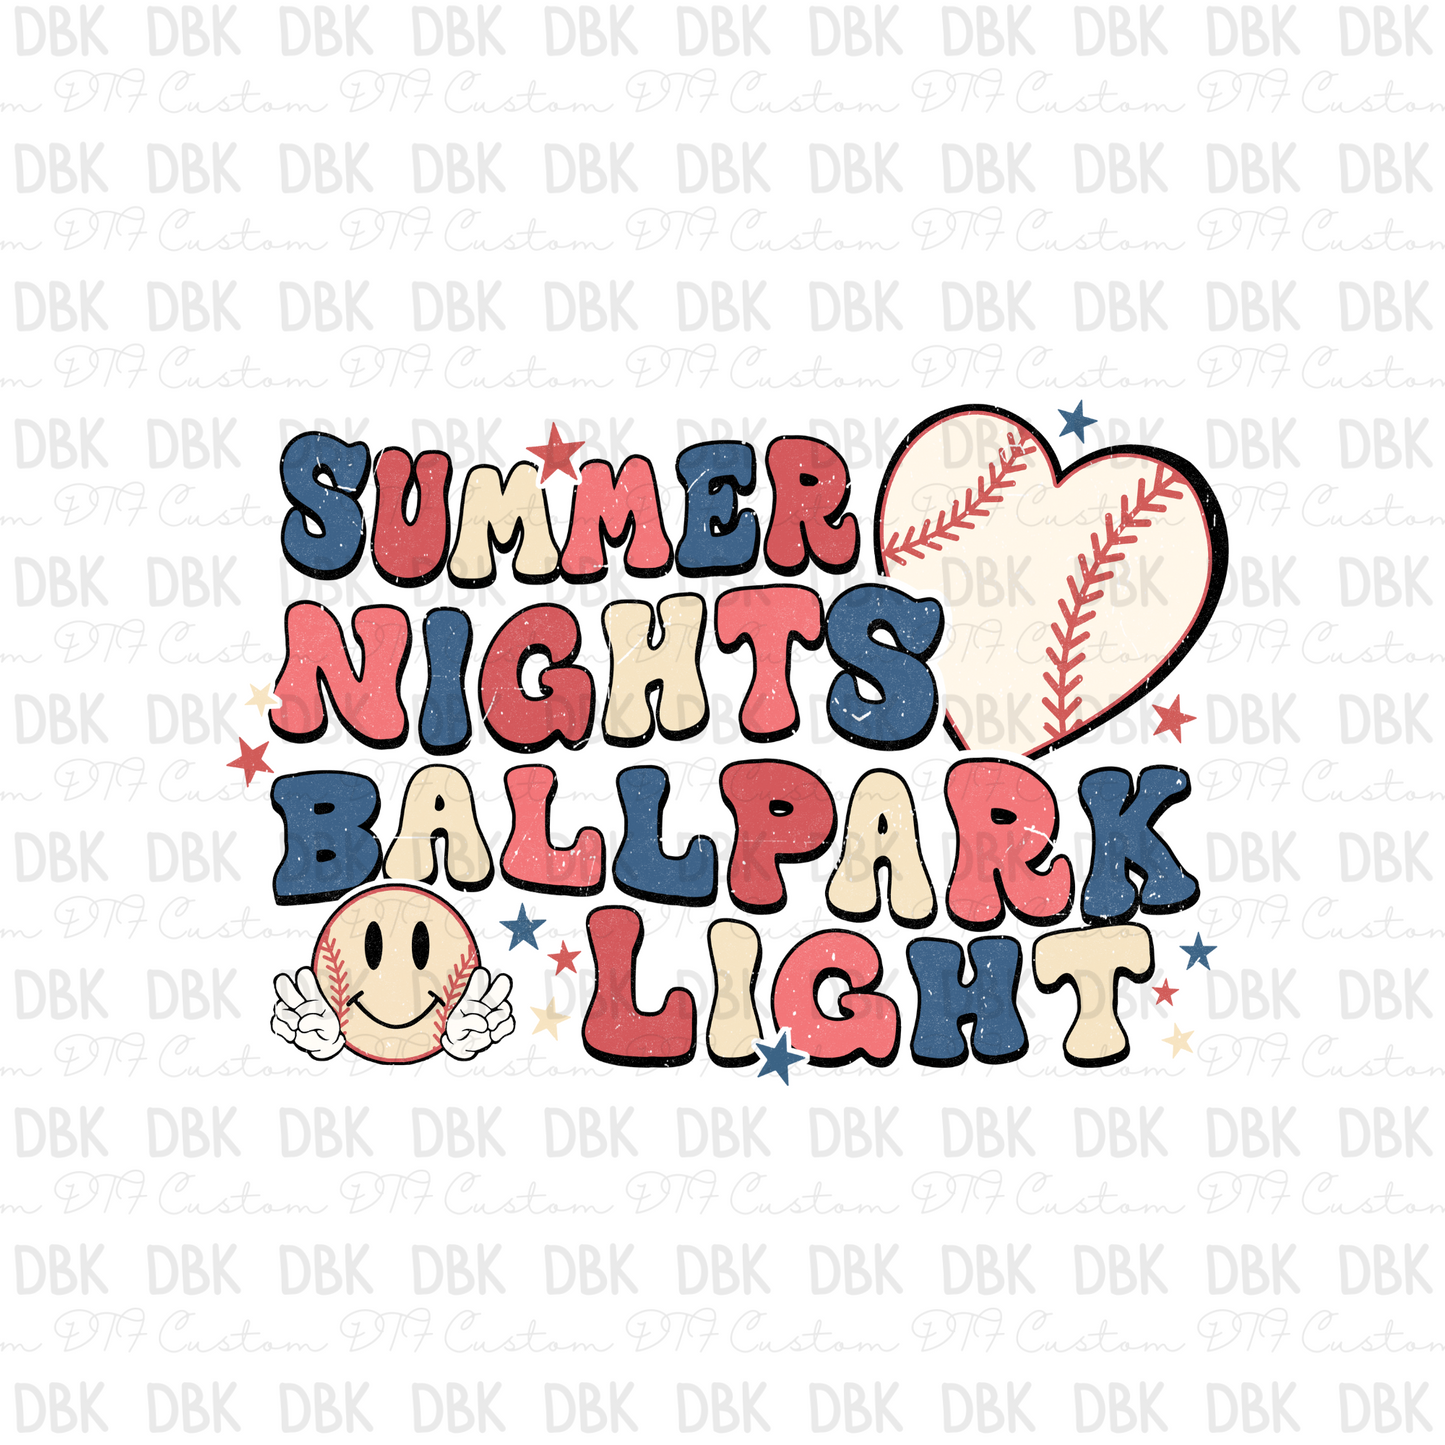 Summer nights ballpark lights DTF transfer C35